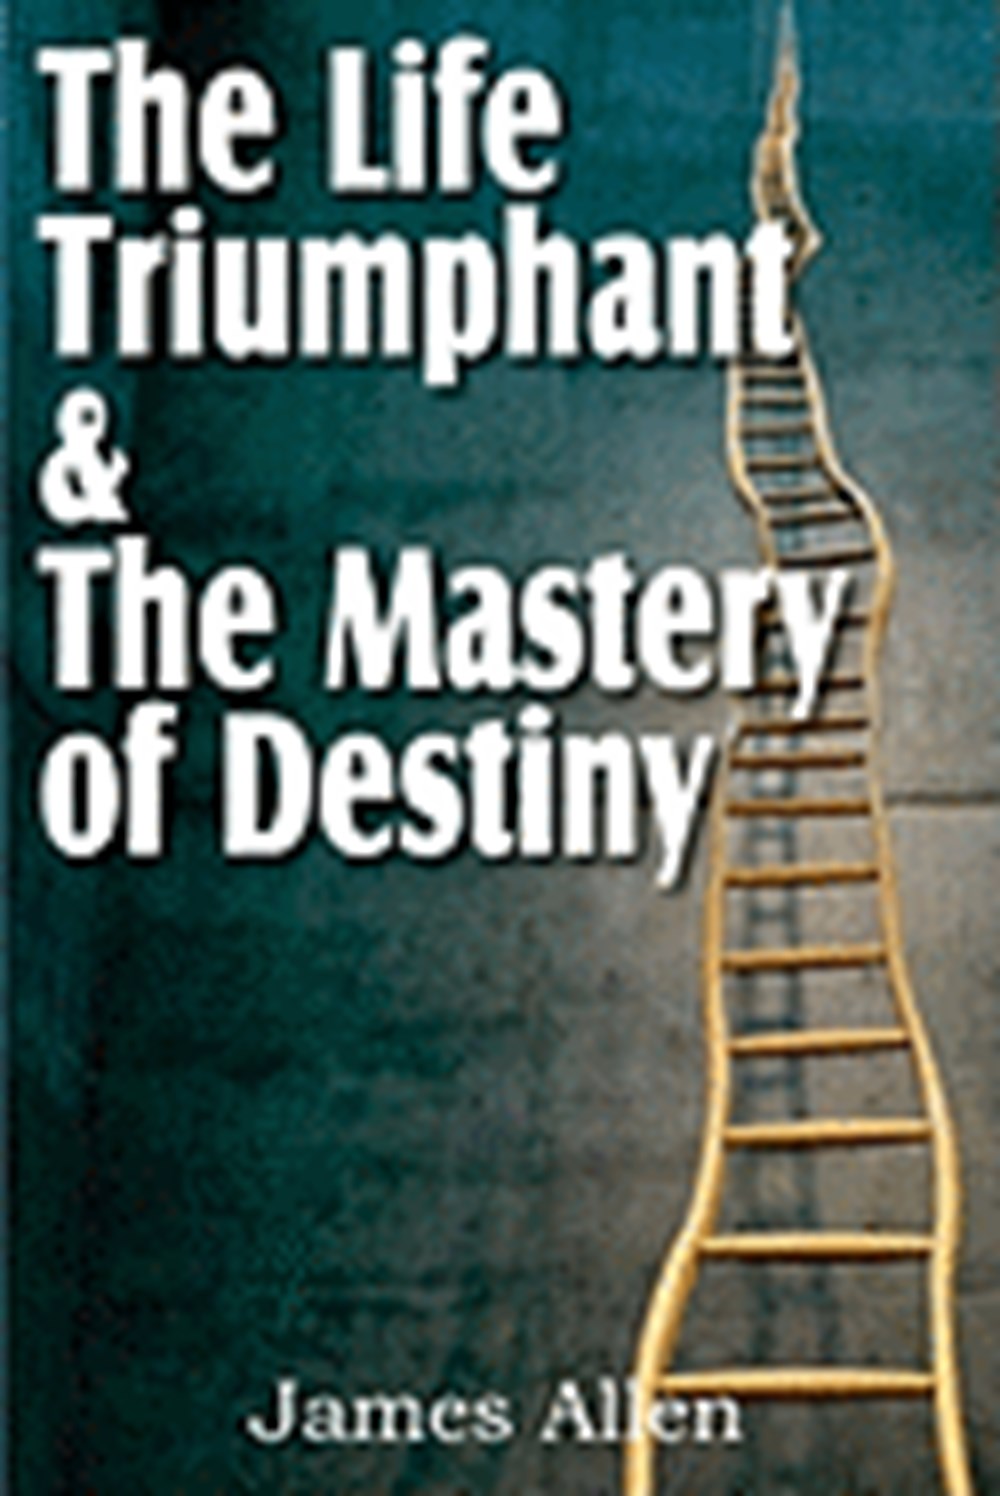 Life Triumphant & the Mastery of Destiny